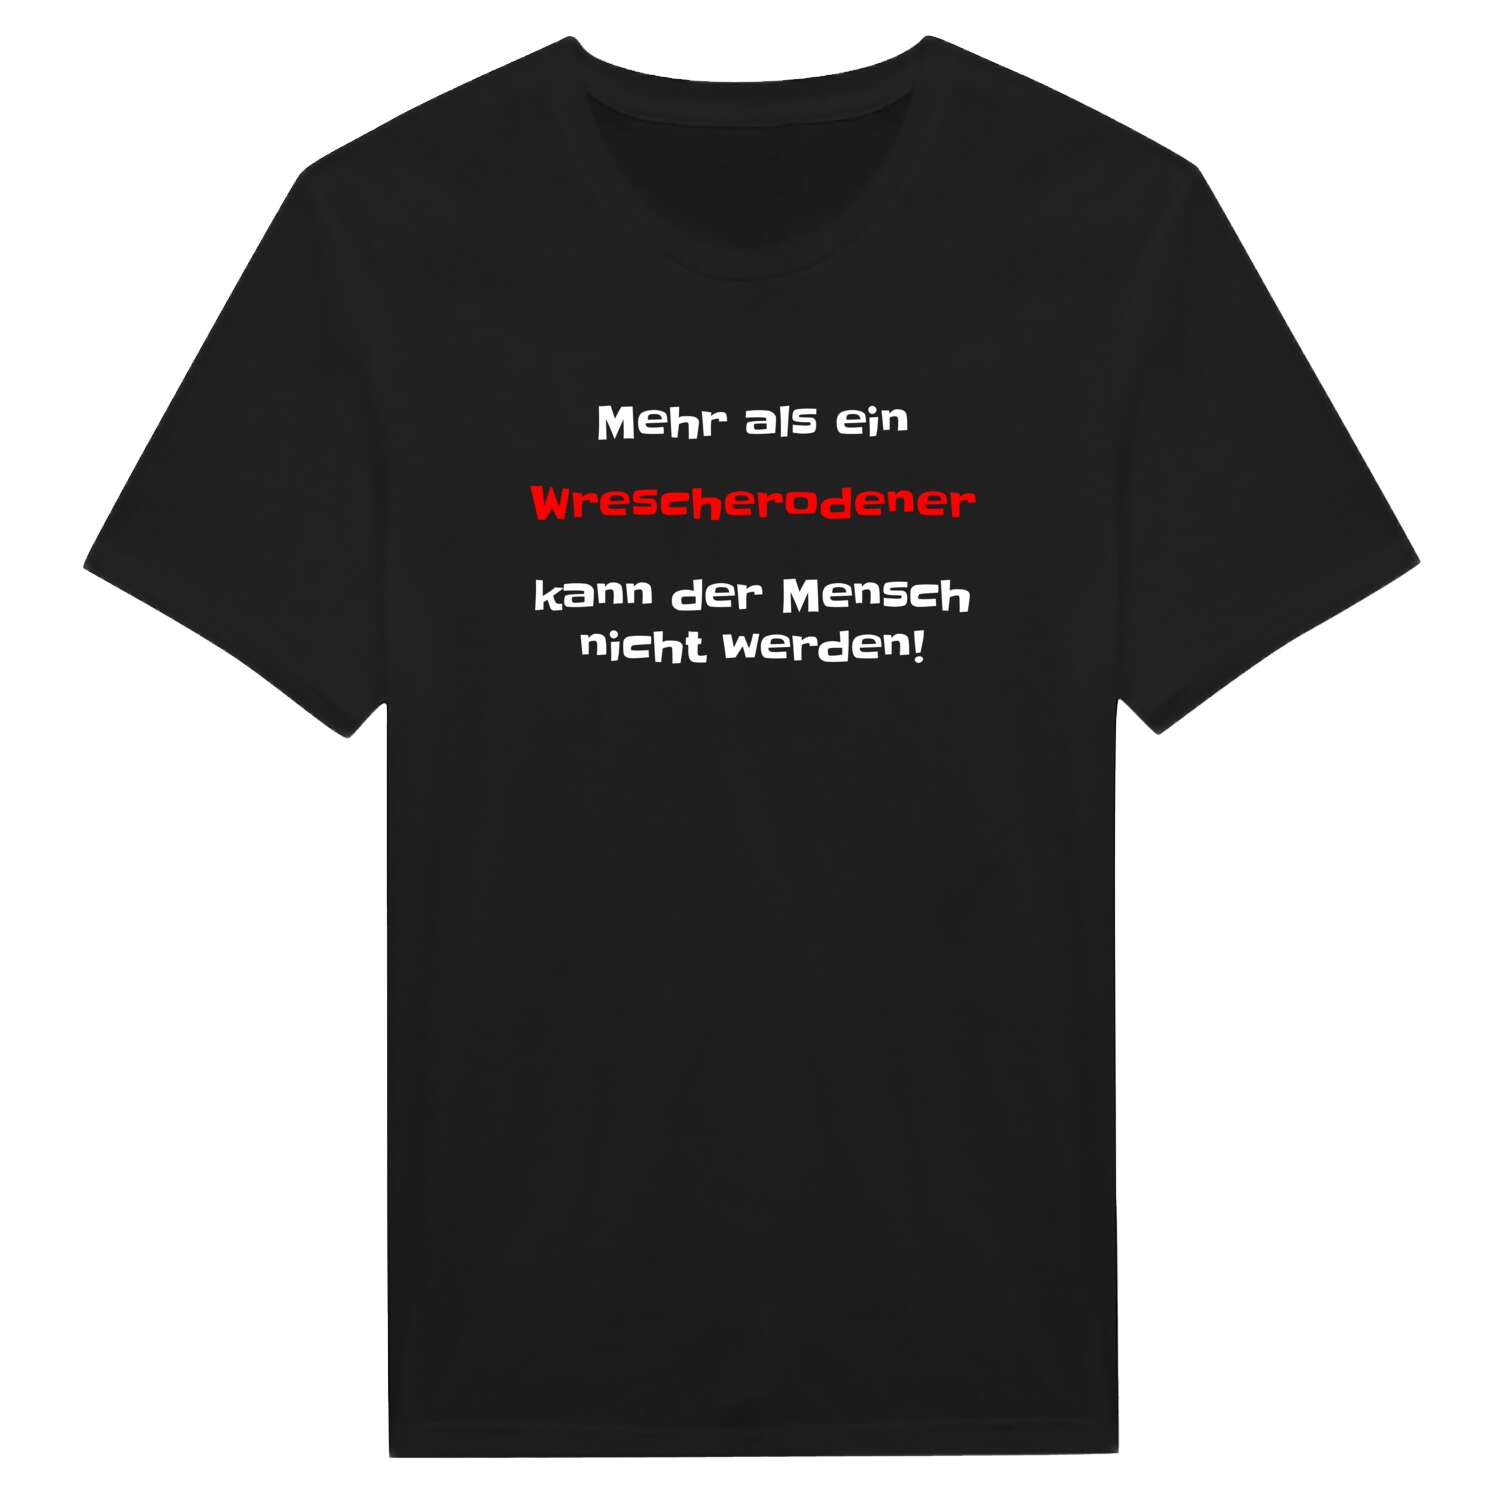 Wrescherode T-Shirt »Mehr als ein«